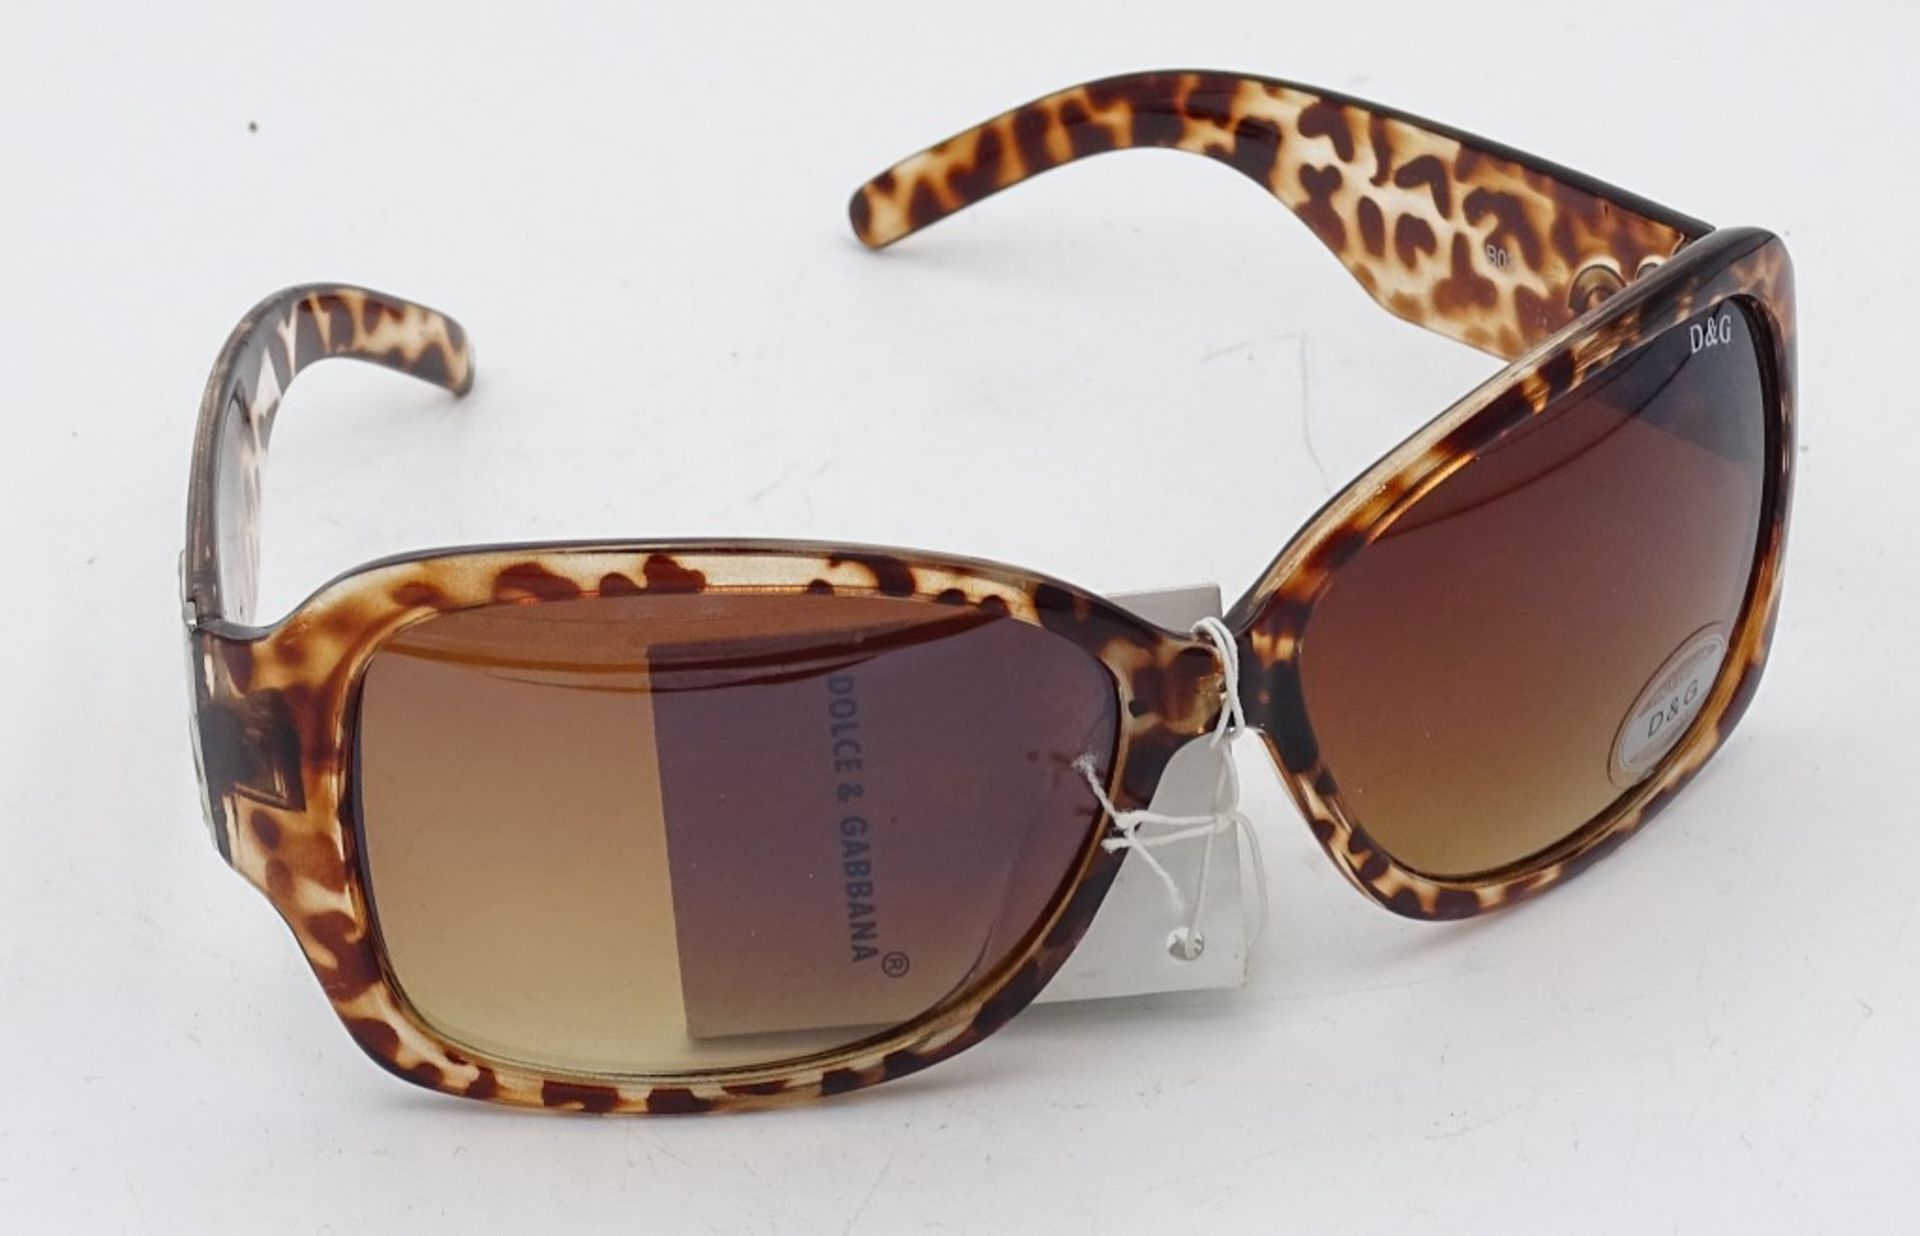 Damen Sonnenbrille "D&G" Dolce & Gabbana